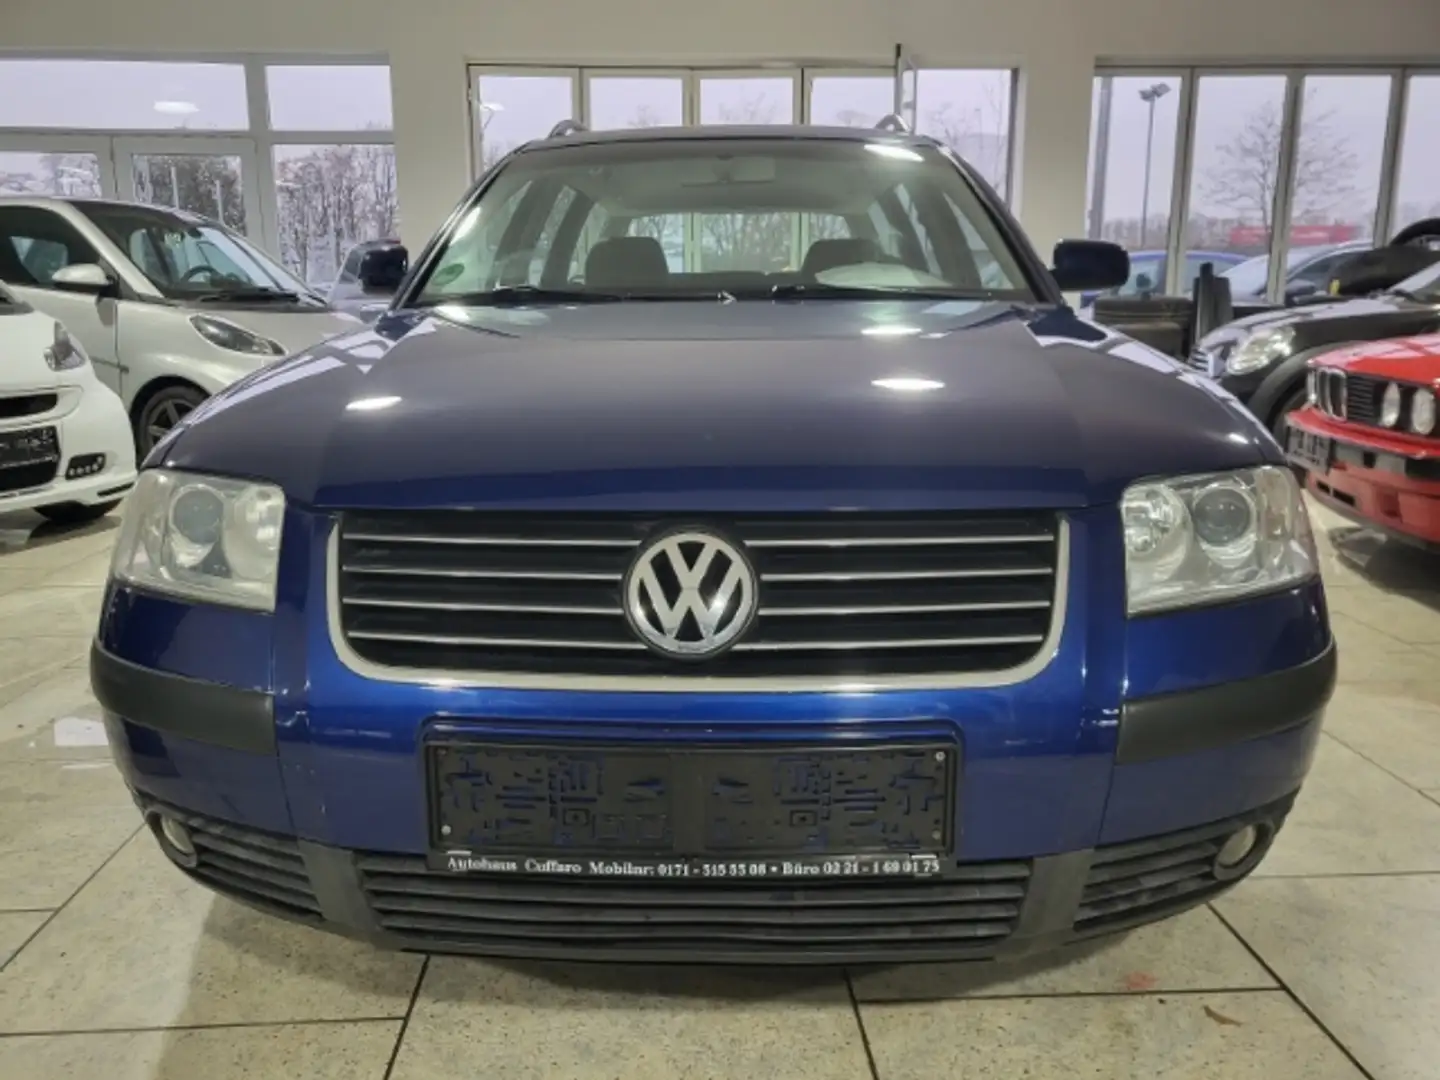 Volkswagen Passat Variant tüv neu Garantie Inspektion Winterreifen Blau - 1